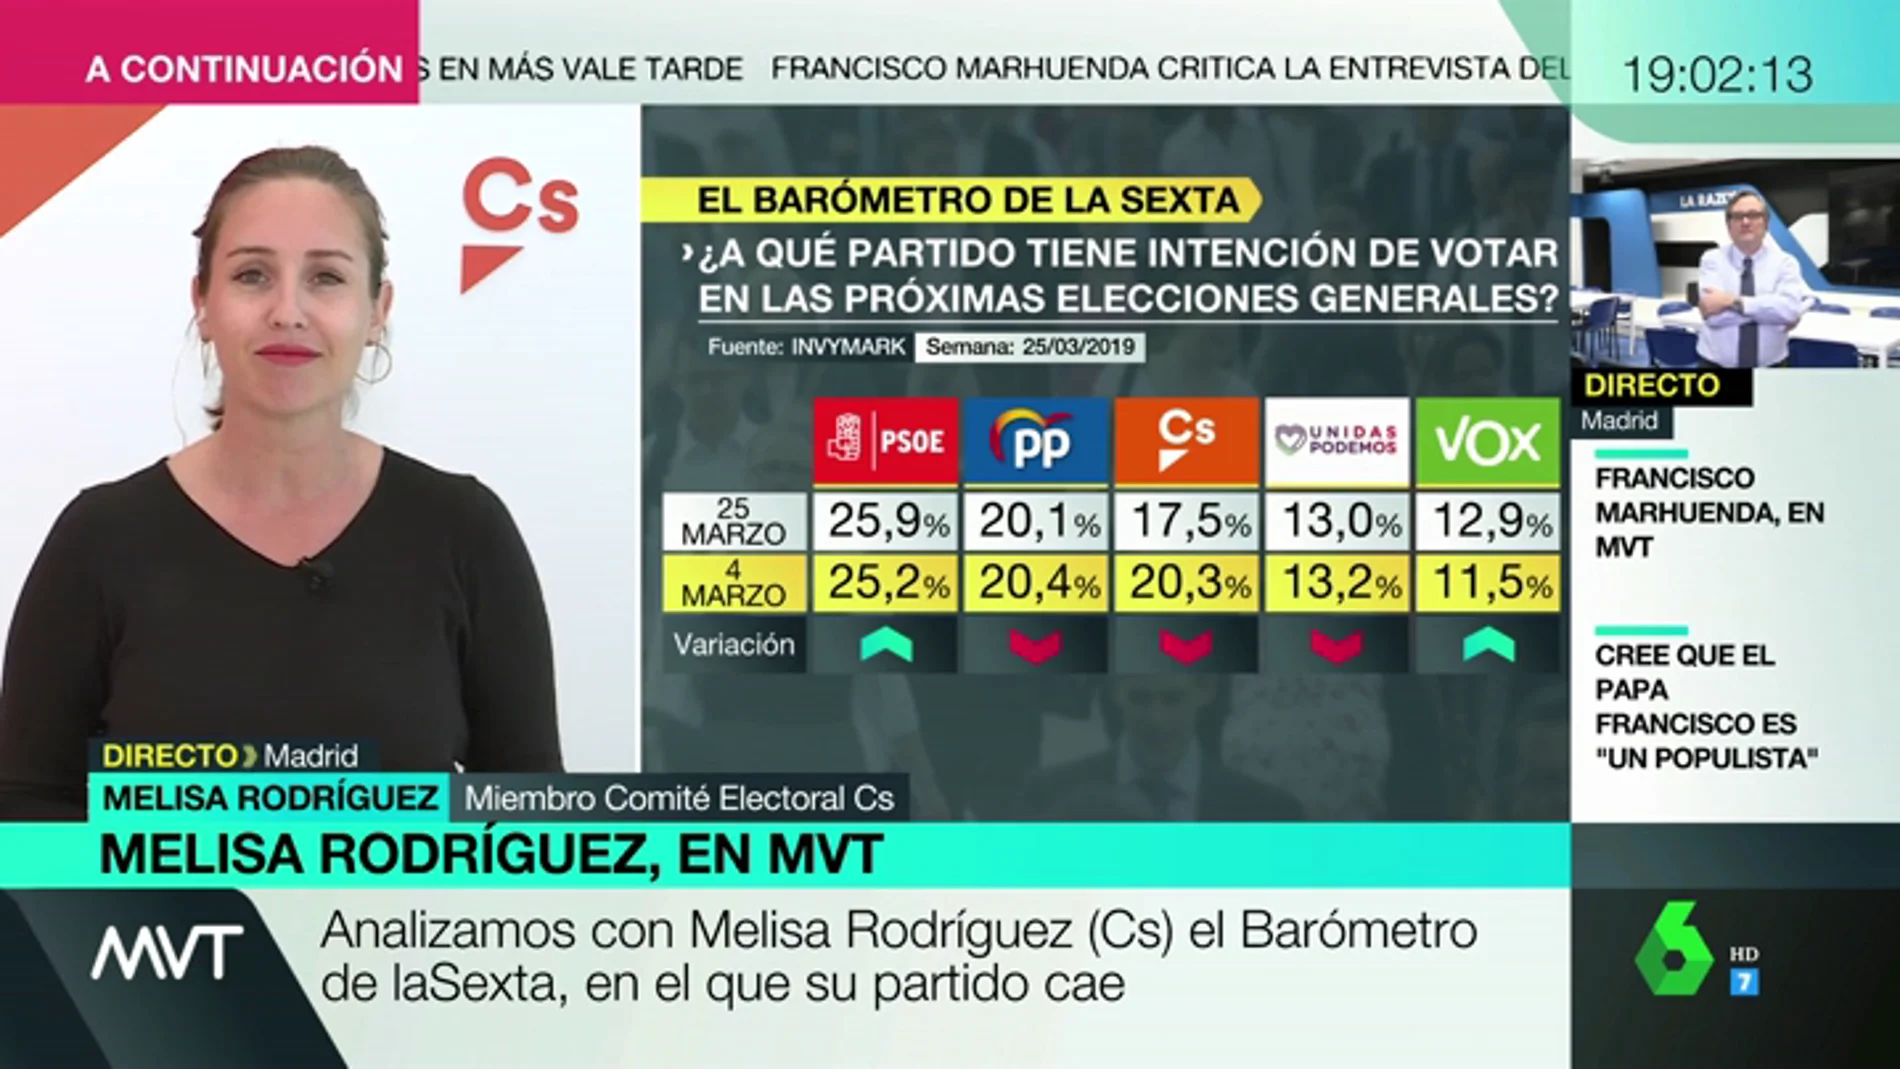 Melisa Rodríguez, sobre los resultados del Barómetro de laSexta: "Lo que hoy se da por bueno mañana puede estar obsoleto"